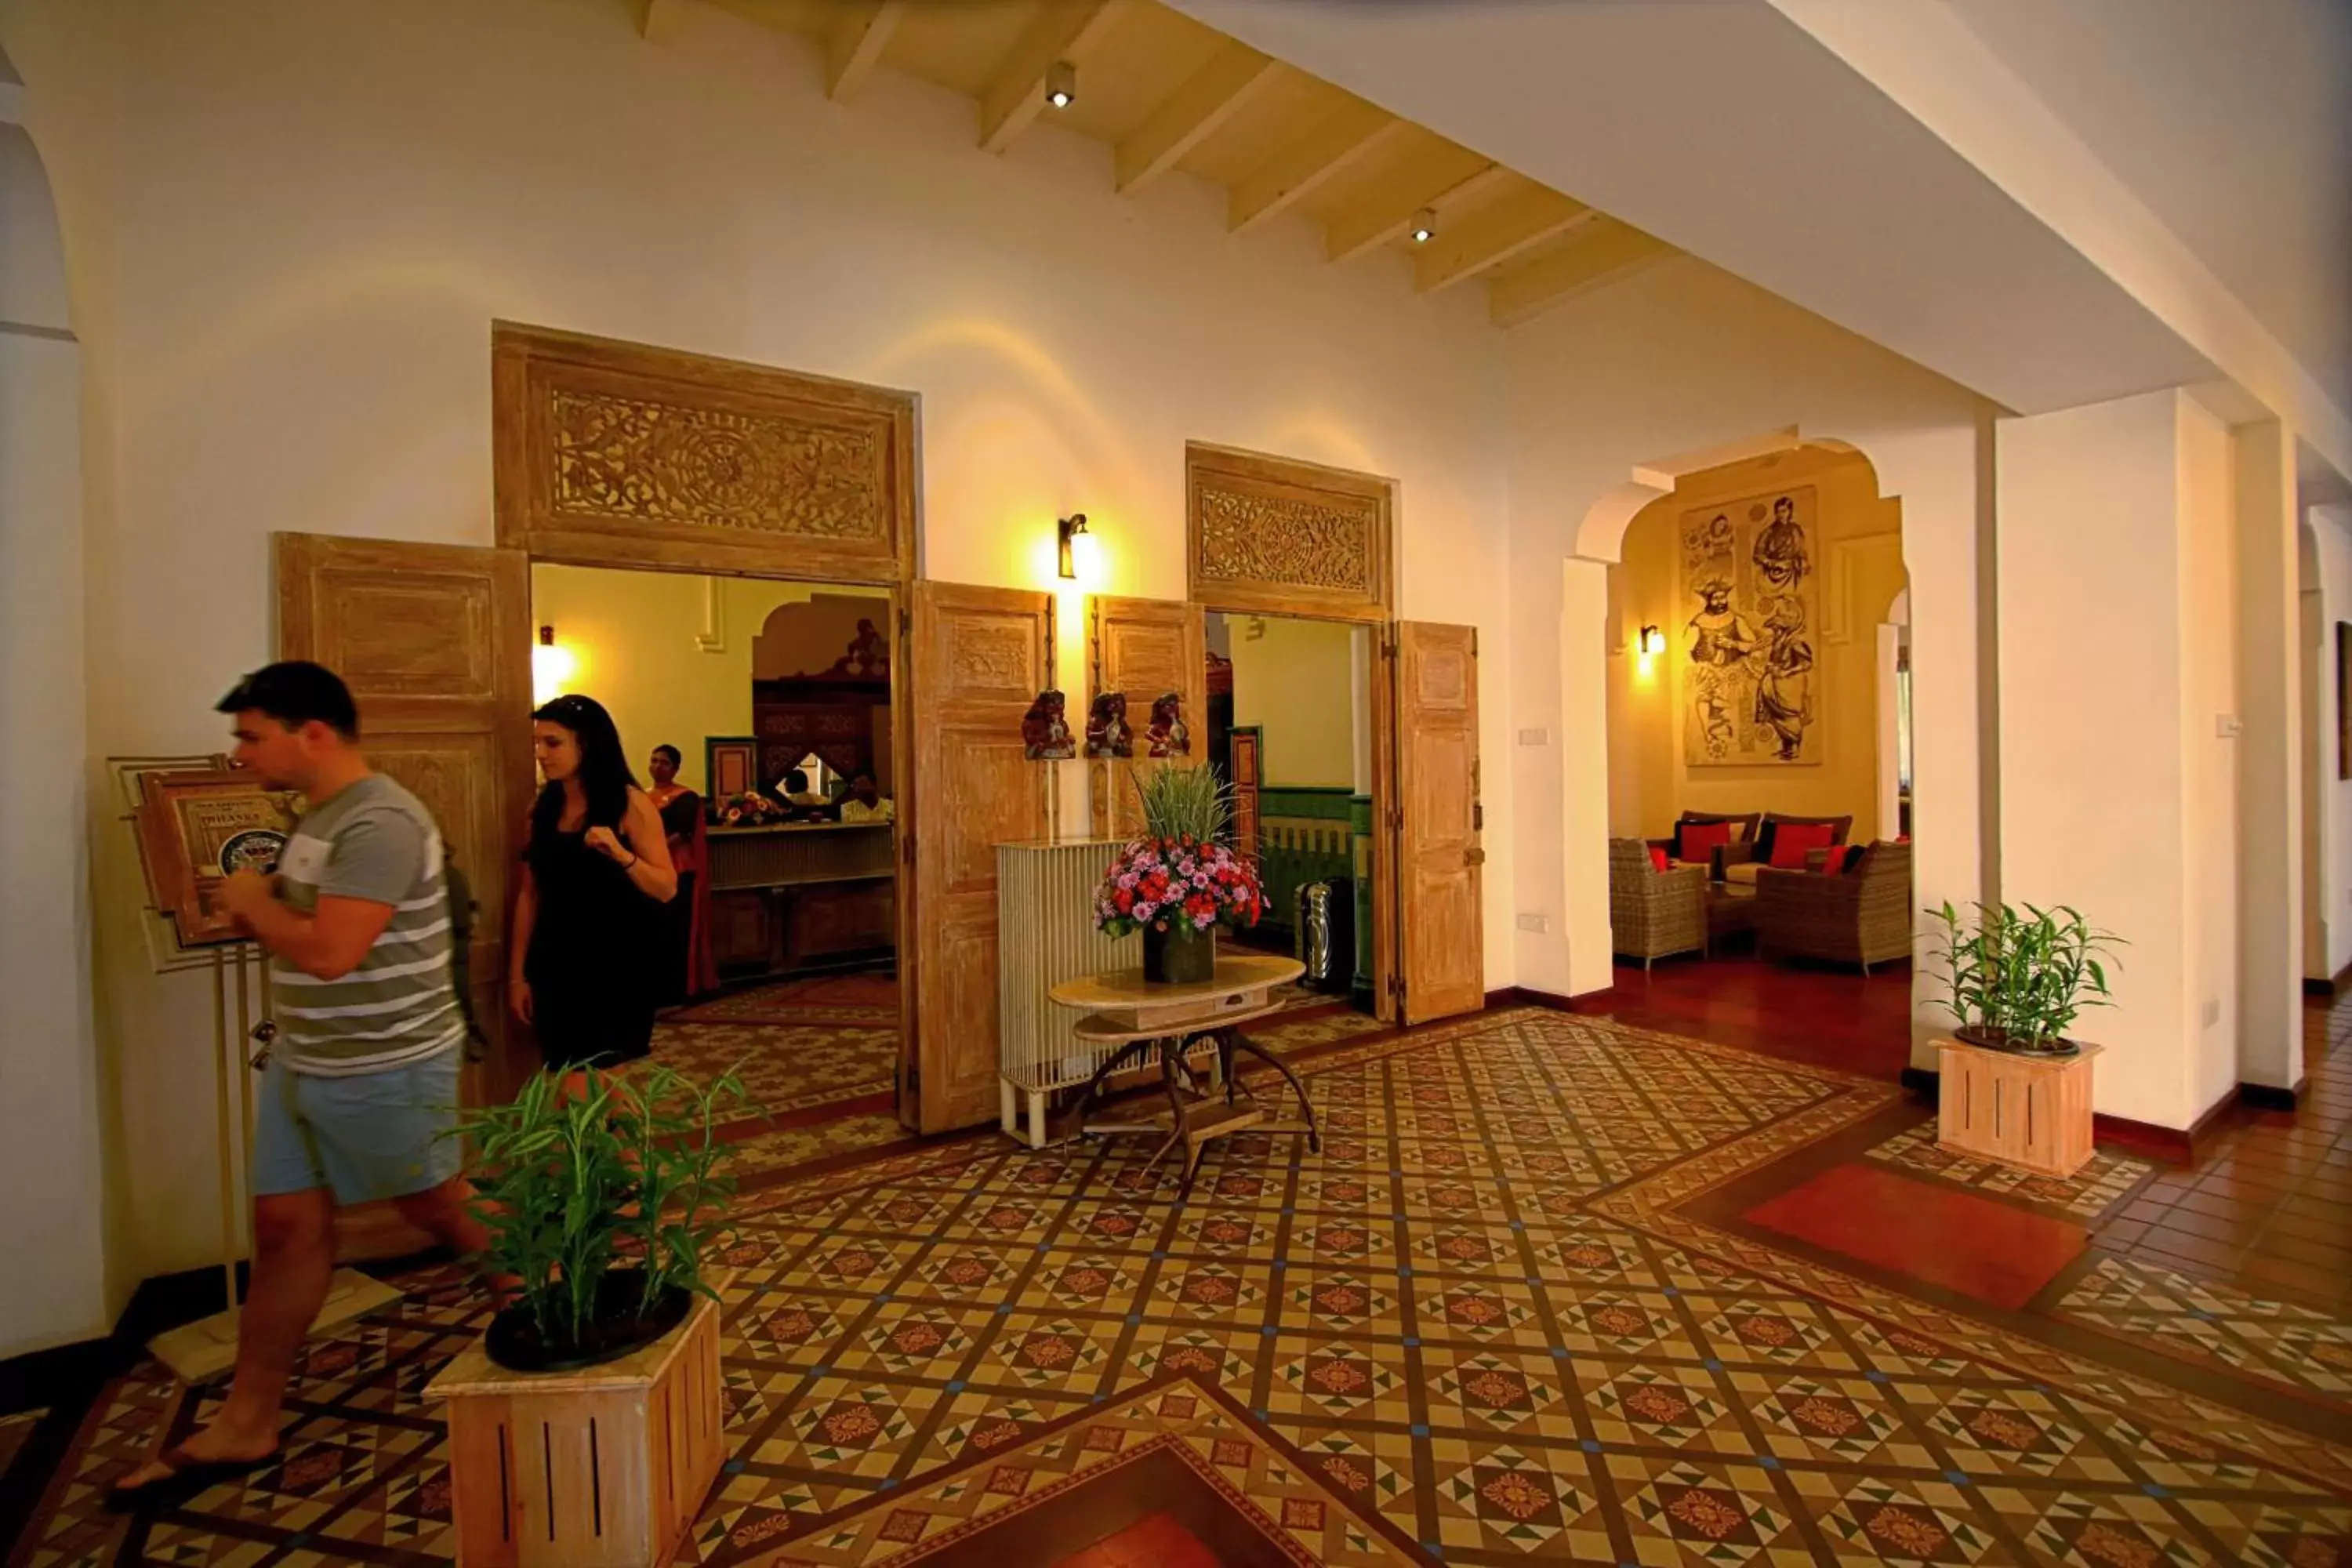 Lobby or reception in Thilanka Hotel